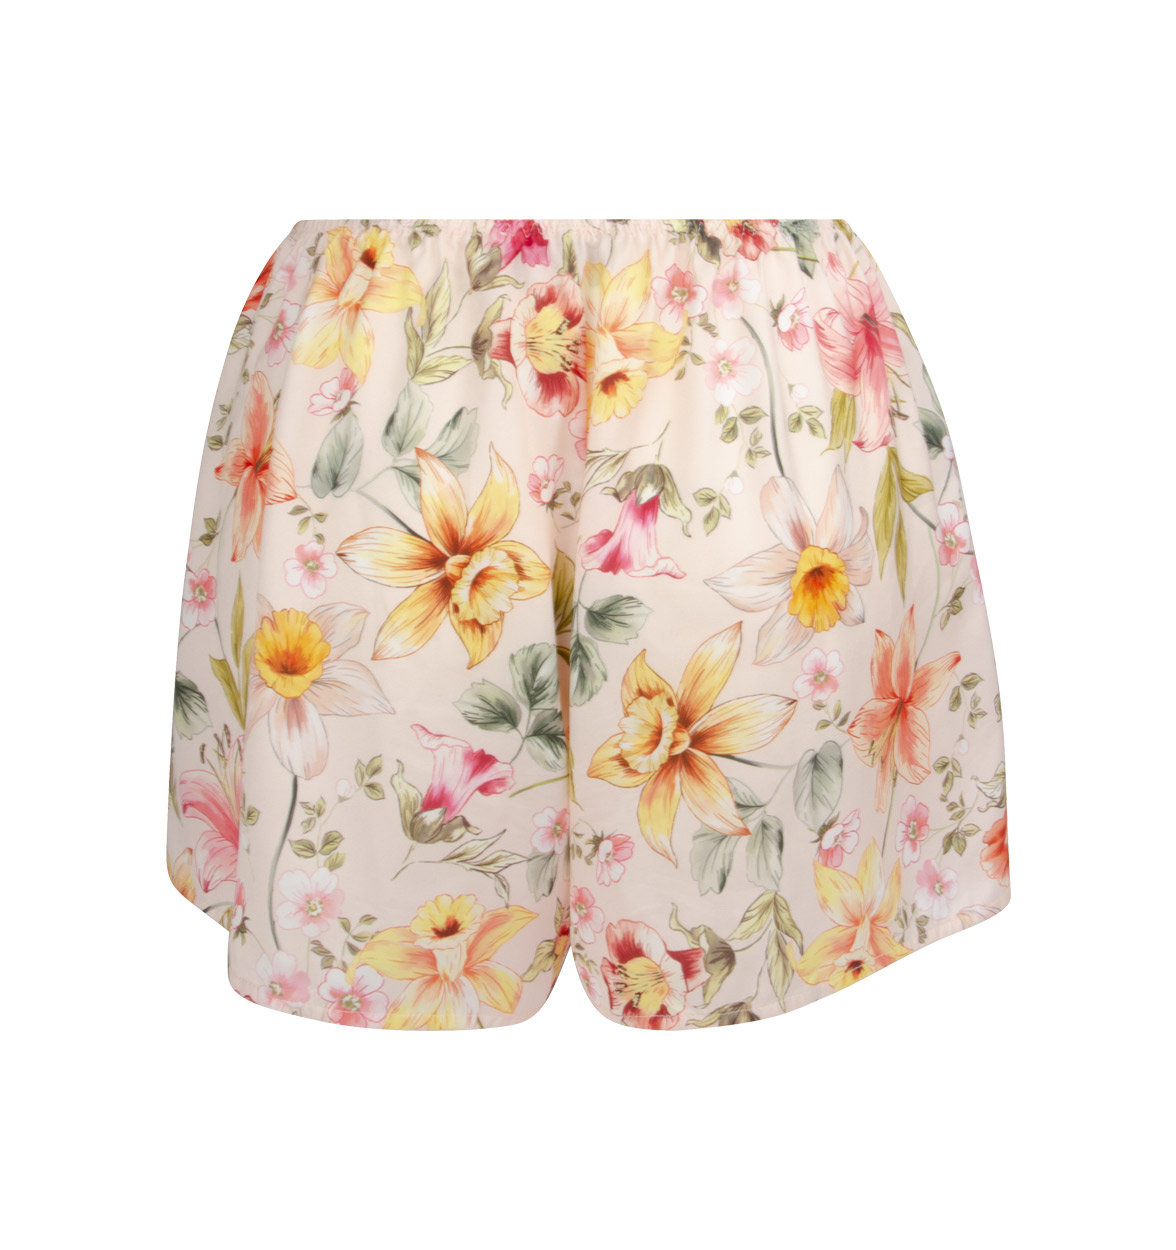 ALG0185 Shorts  Serie Desir en Fleur von Lise Charmel - Farbe Fleur Soleil